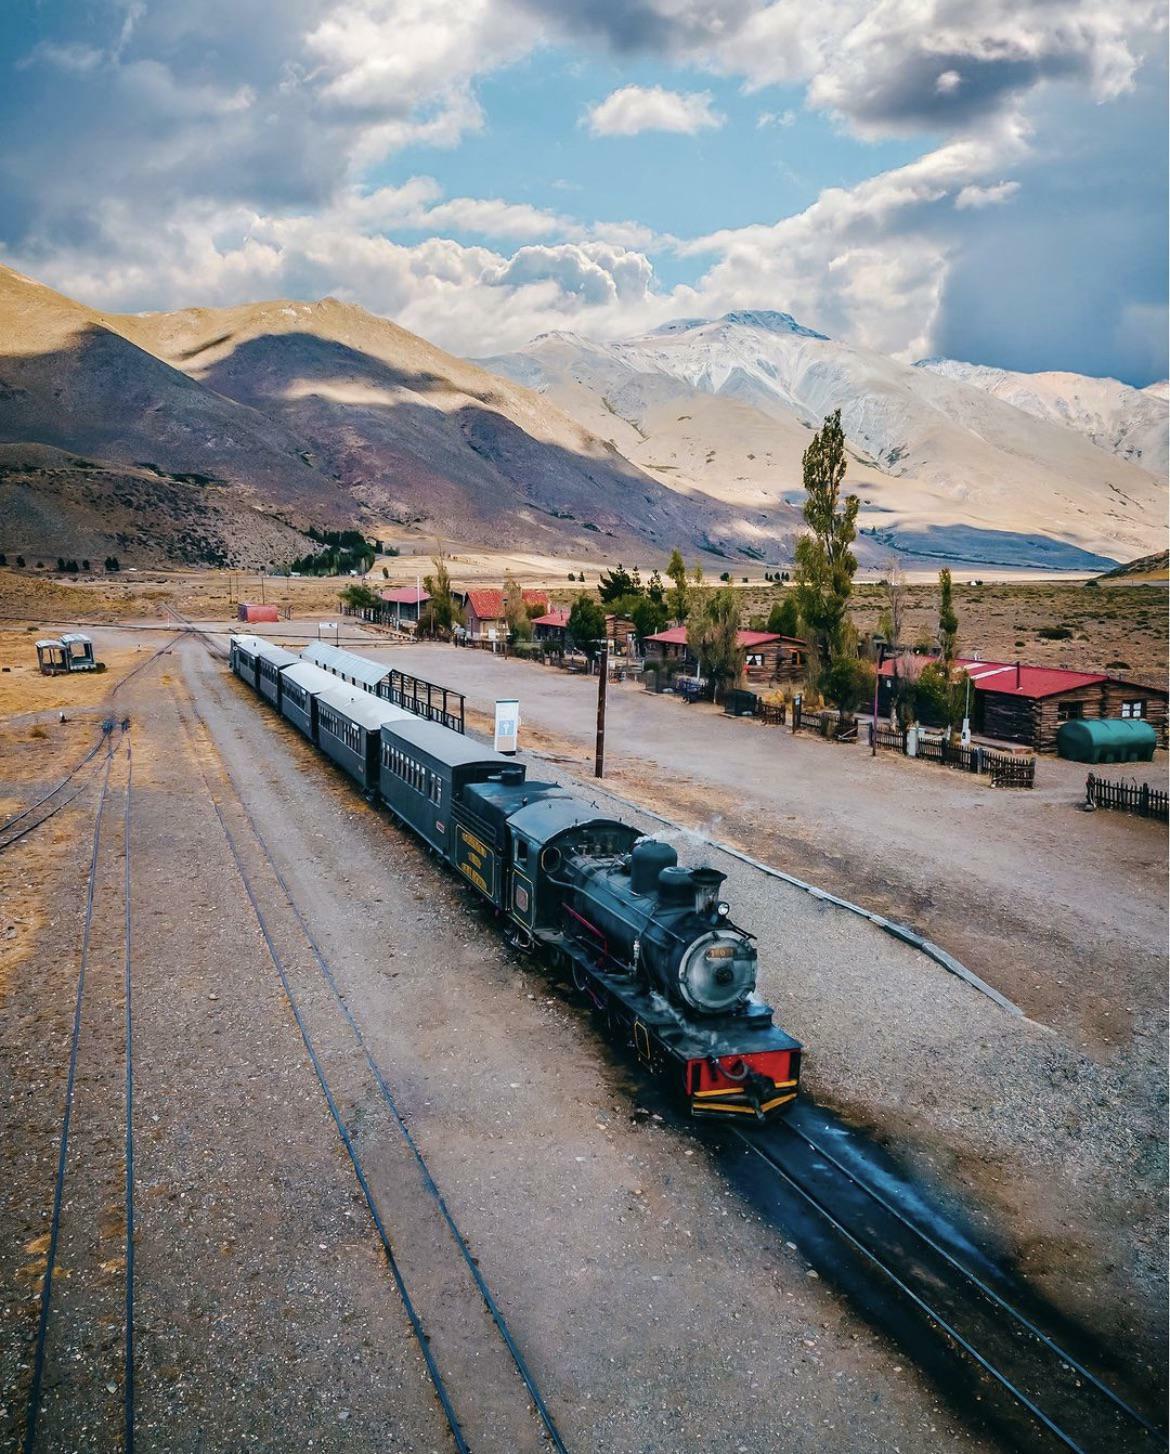 Train en Patagonie argentine (Esquel, province de Chubut)